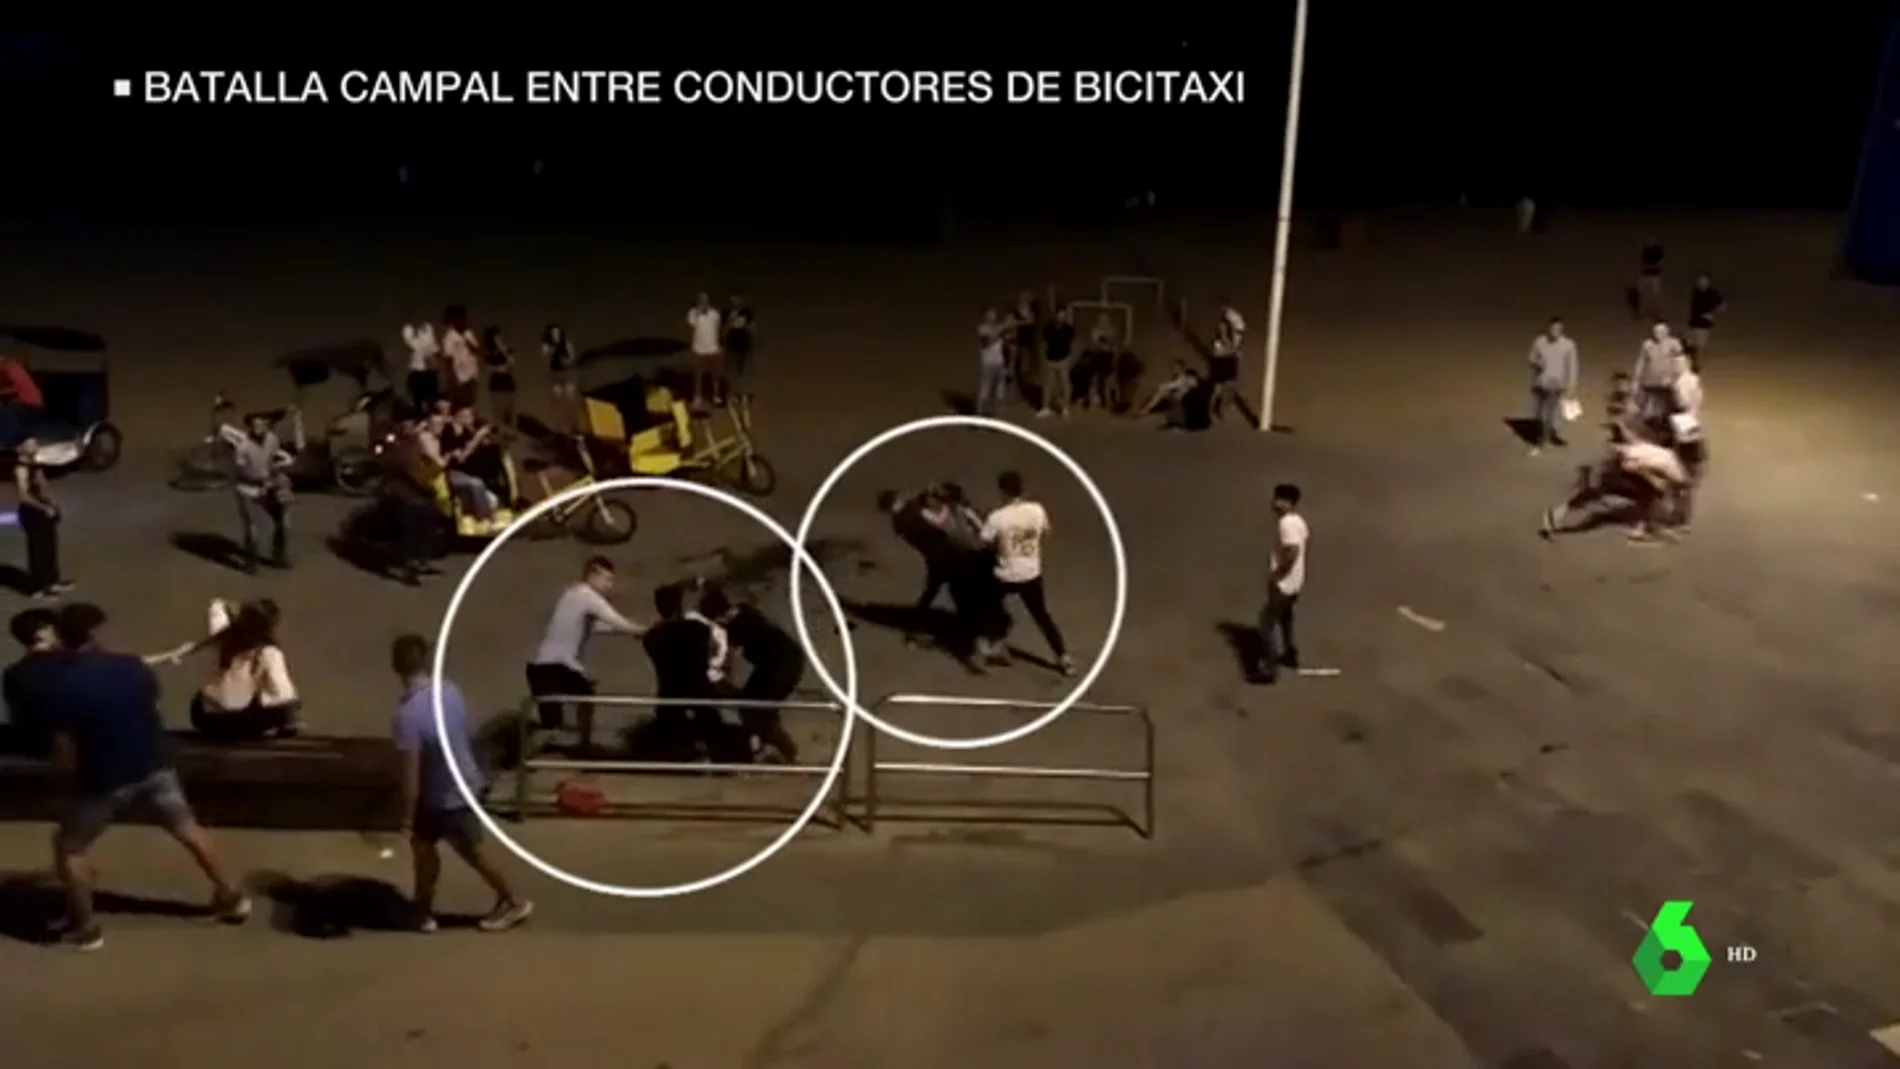 Batalla campal entre bicitaxistas legales e ilegales en la playa de la Barceloneta: "Esto es como el lejano oeste"